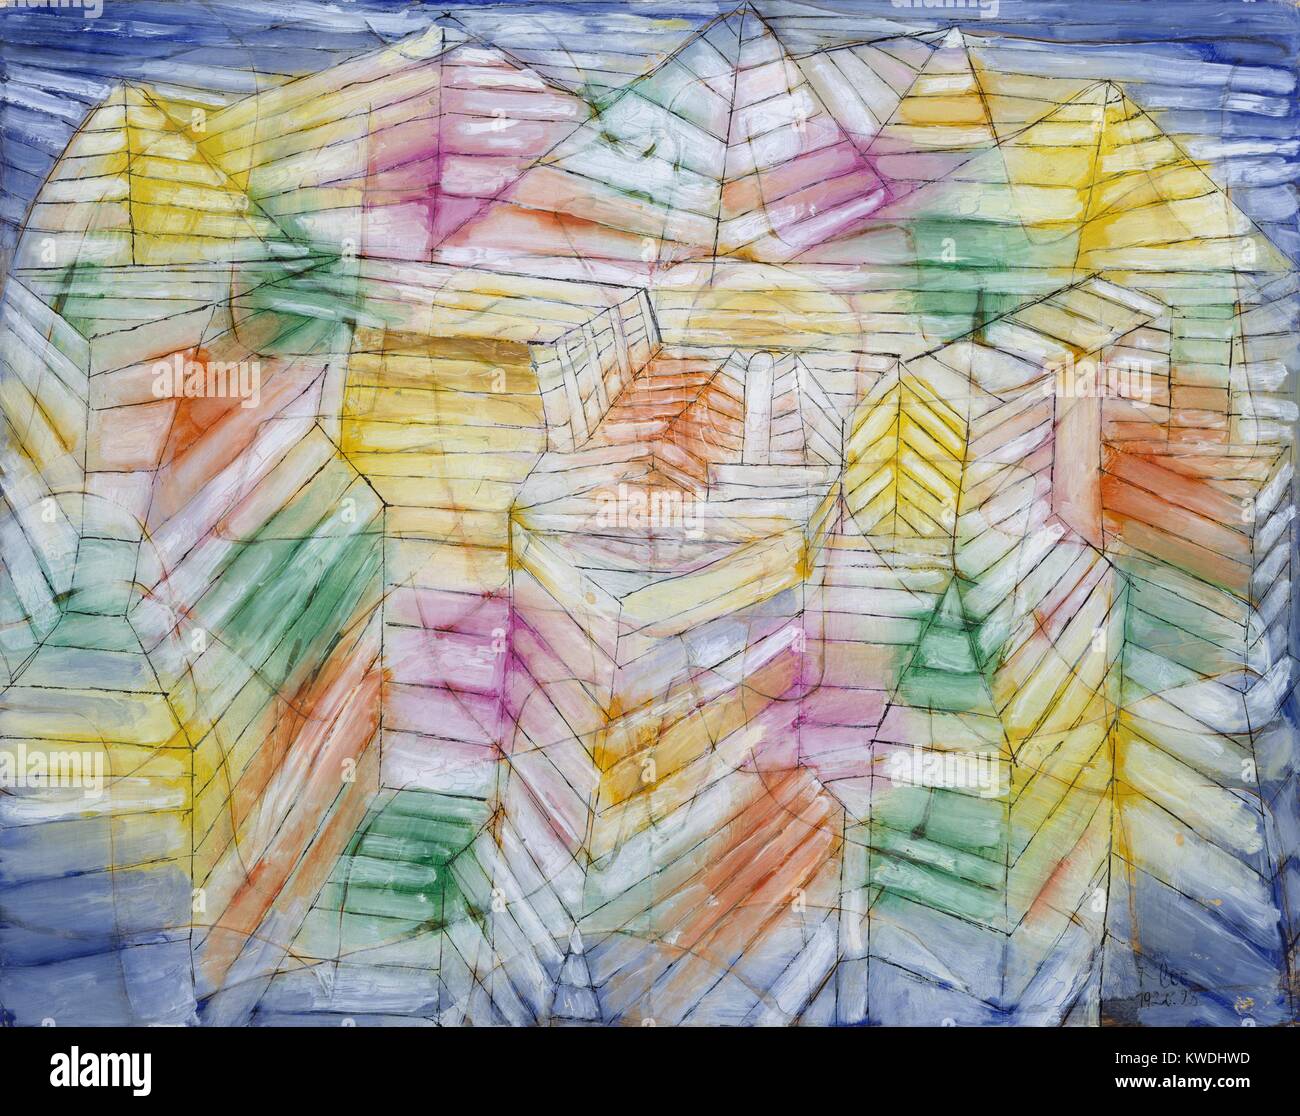 Teatro-mountain-costruzione di Paul Klee, 1920, disegno svizzero, olio, tempera e inchiostro su carta. Illusionistica astrazione geometrica, combinata con simbolici il sole e la luna e le frecce (BSLOC 2017 7 52) Foto Stock